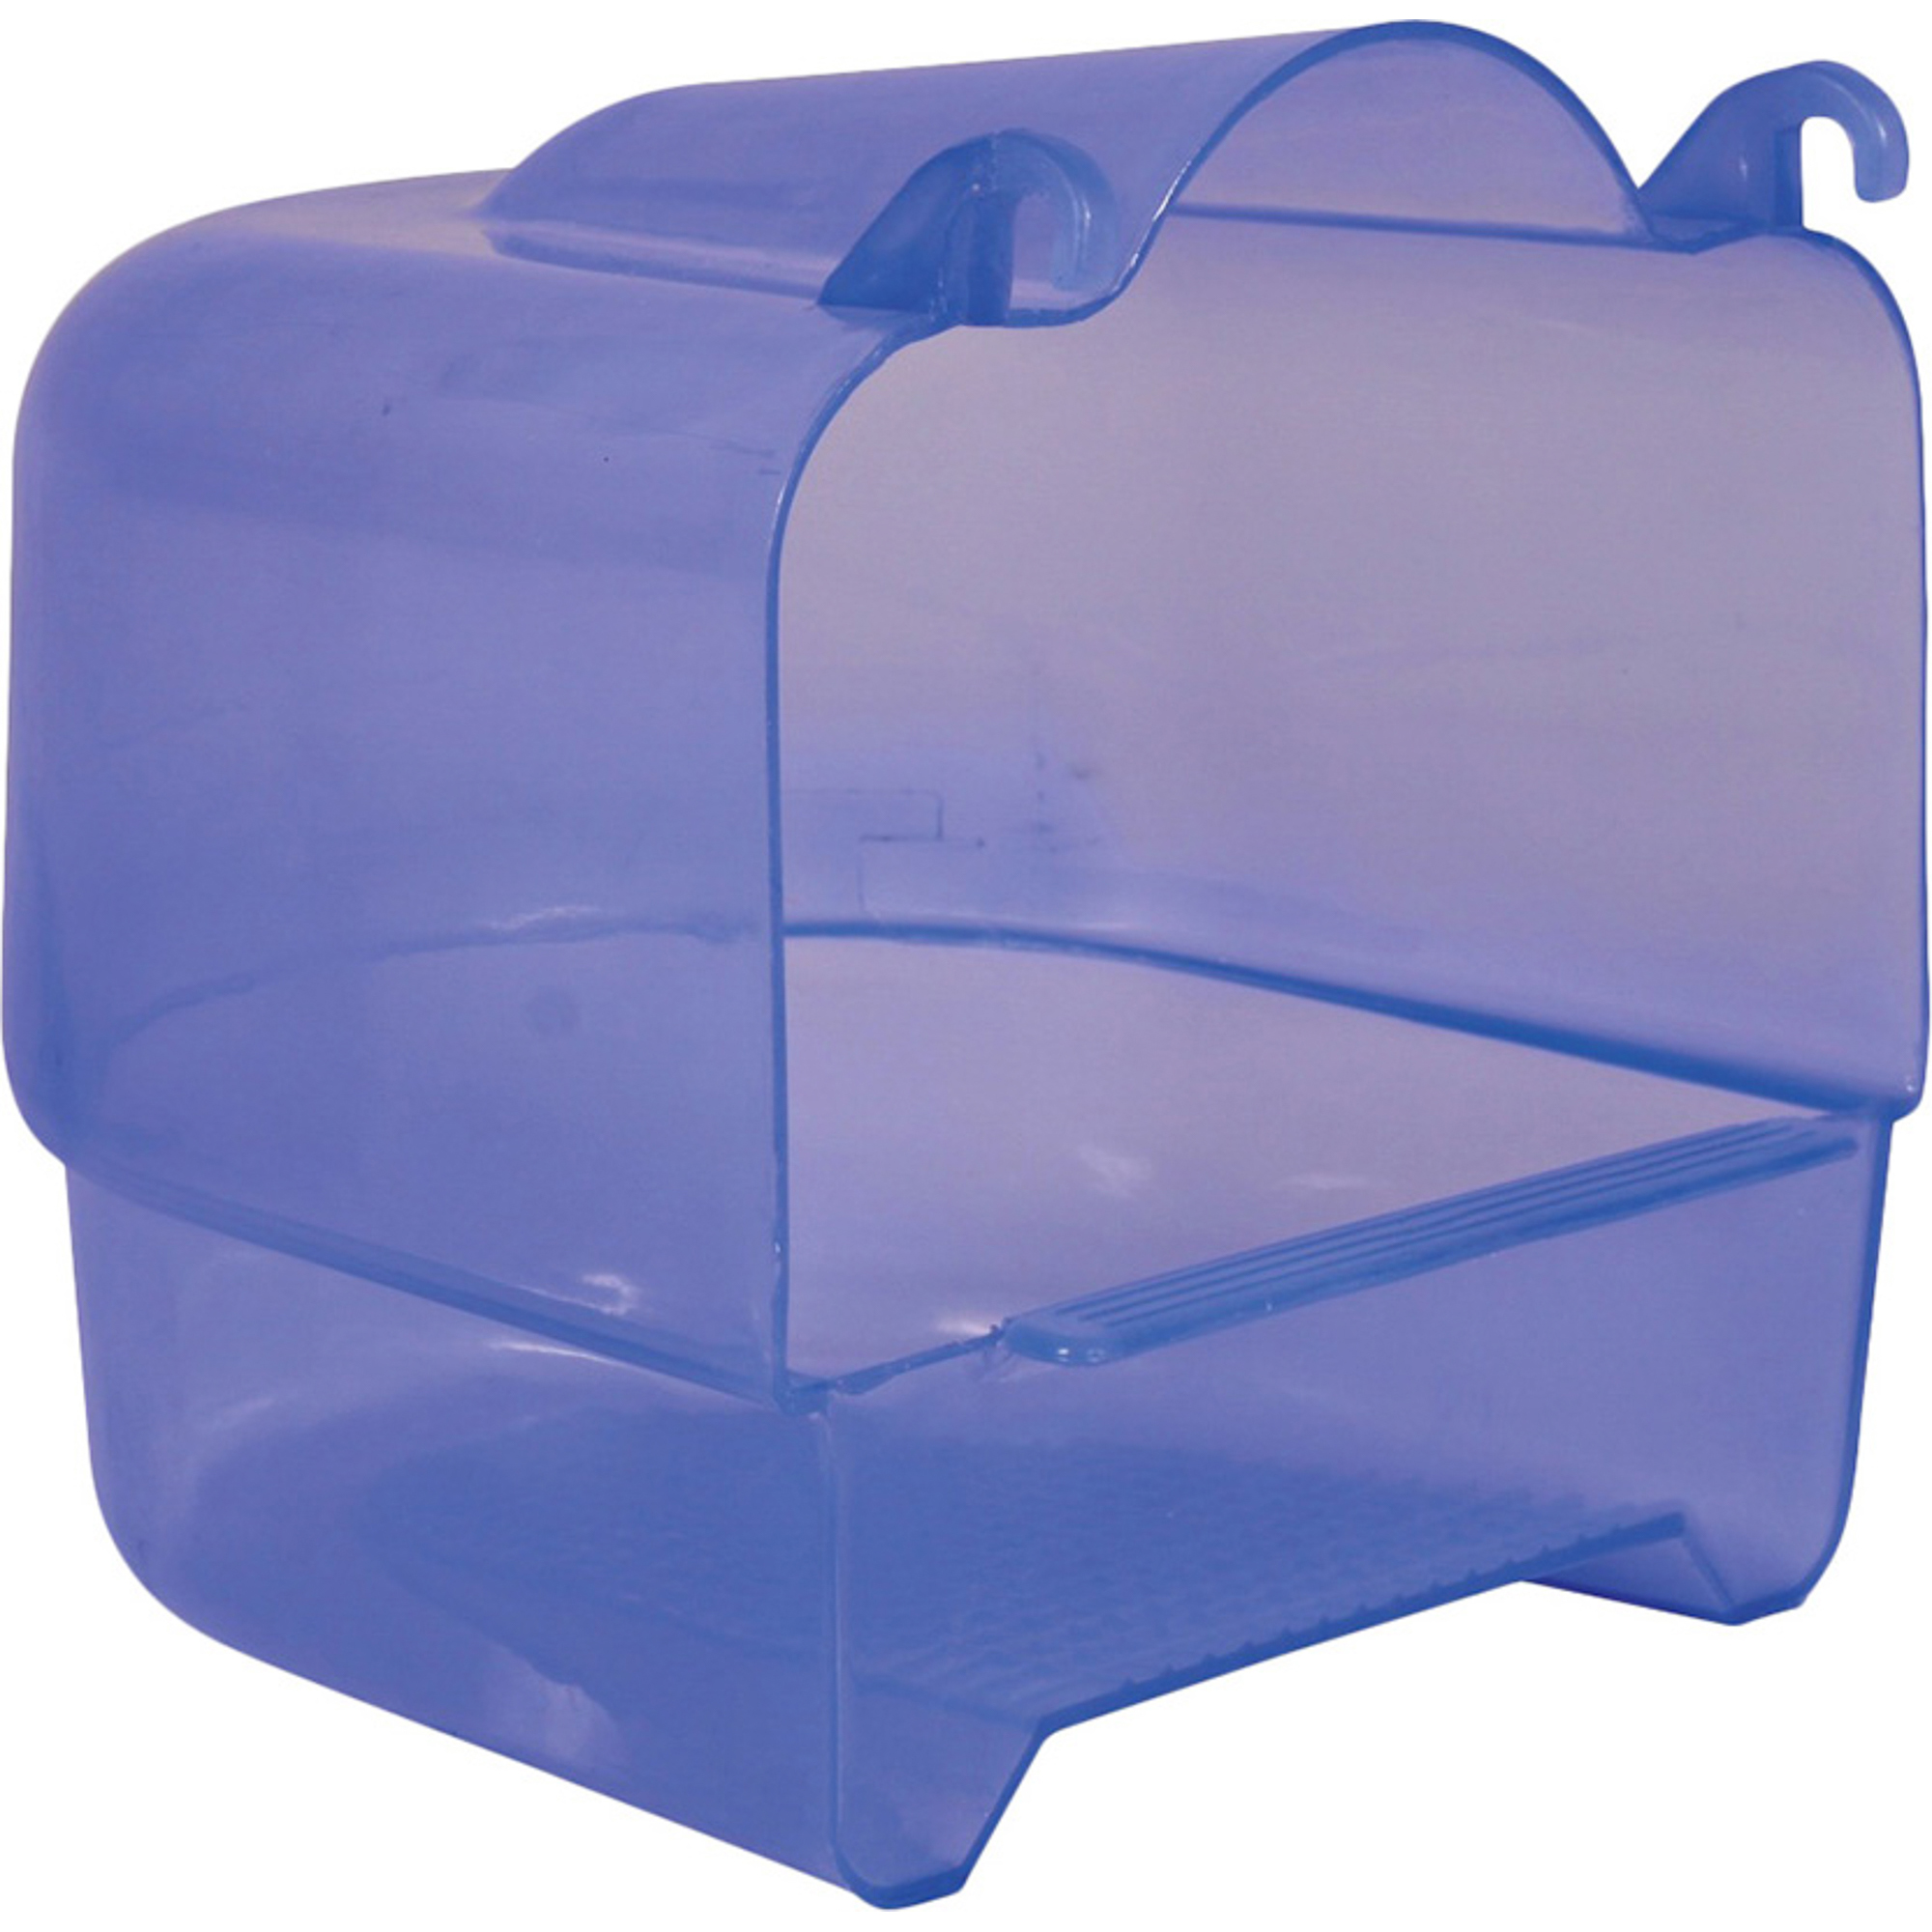 Купалка для птиц TRIXIE Пластиковая прозрачно-голубая купалка trixie для птиц полукруг 14х14х15 см